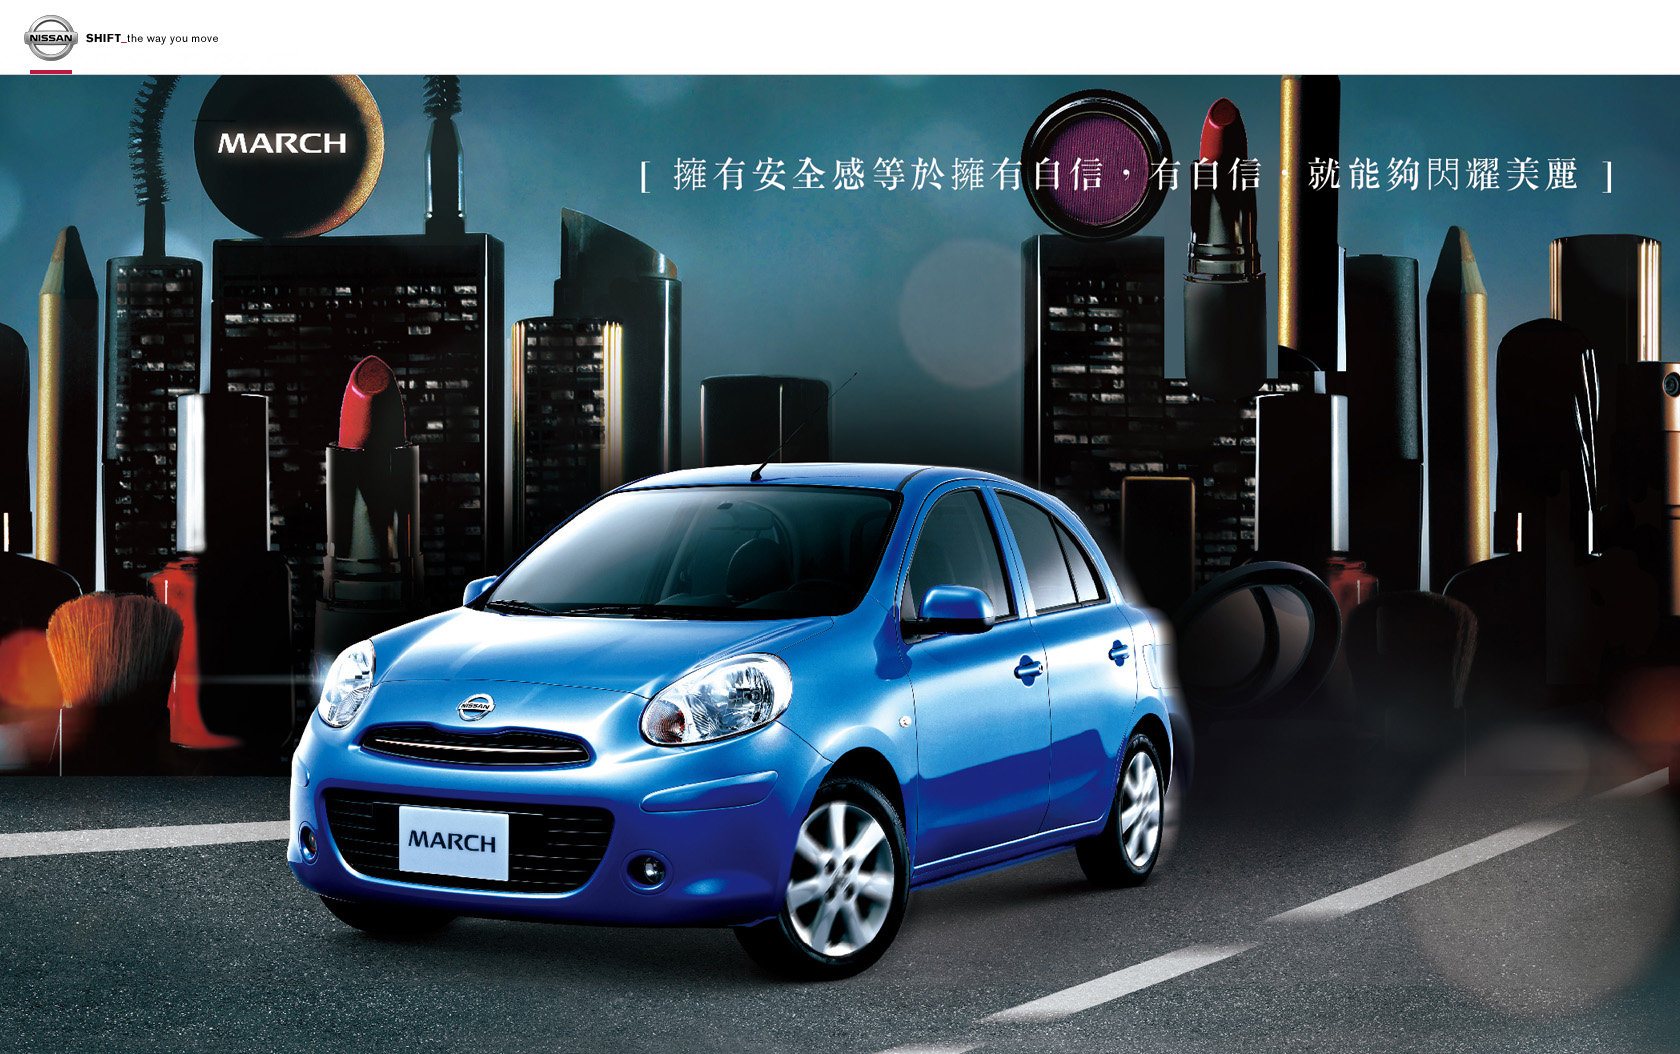 車款規格 New March Nissan 規格查詢 自由電子報汽車頻道